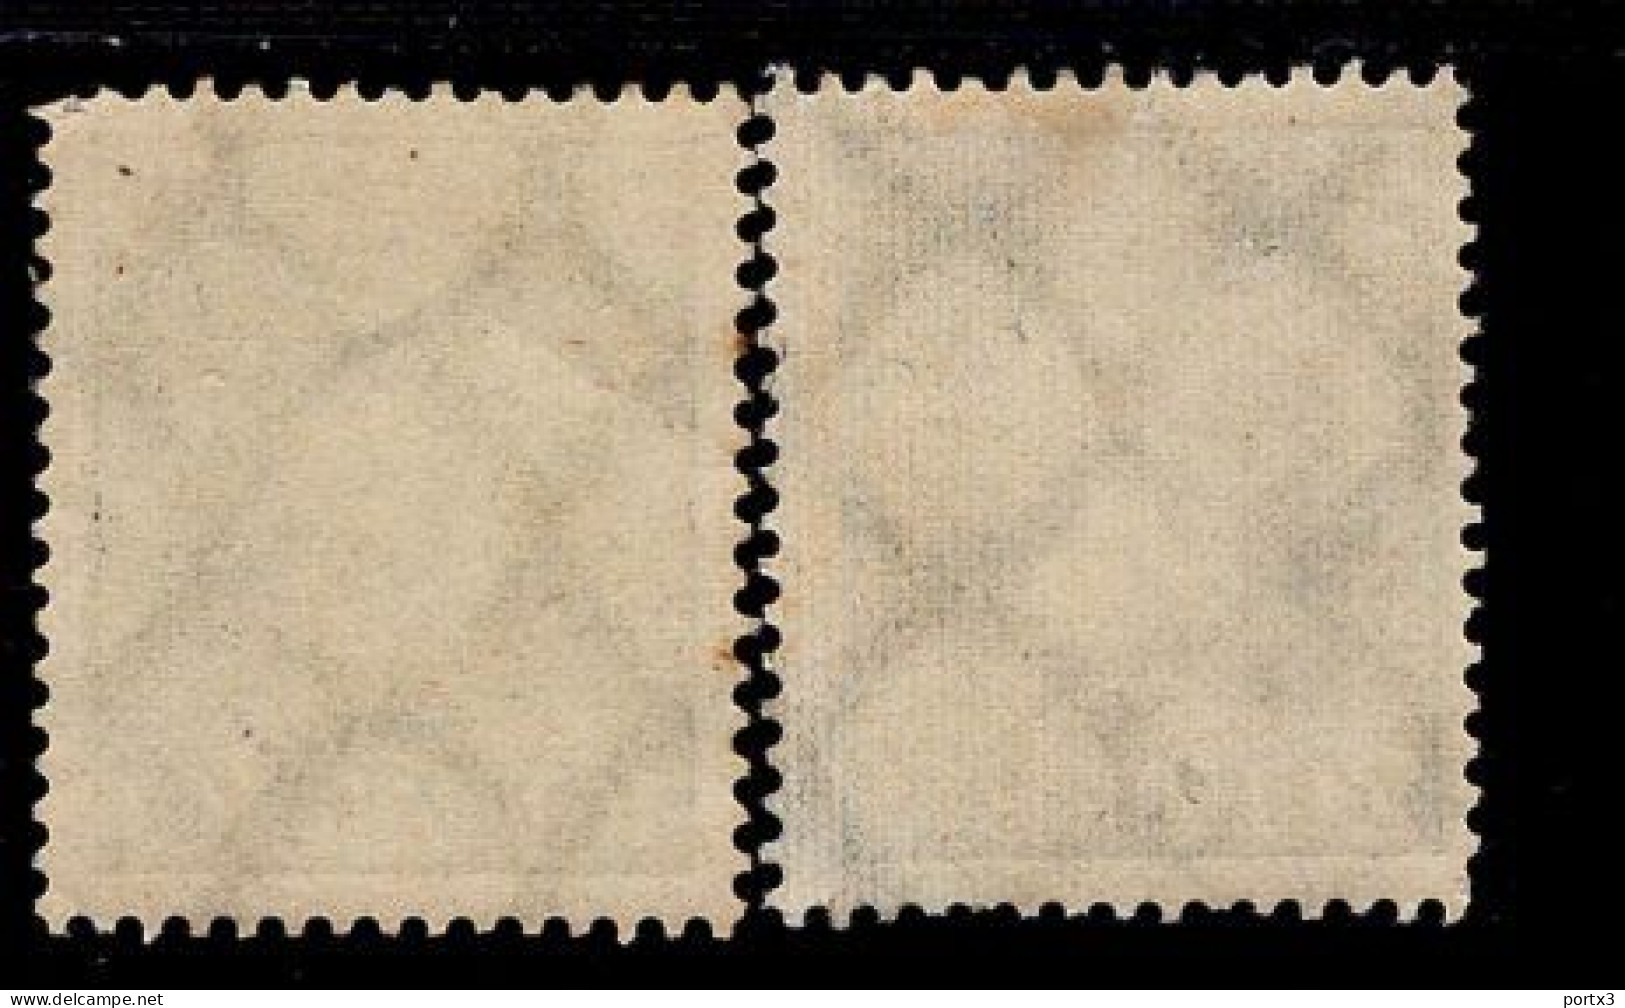 Deutsches Reich 368 - 369 Weltpostverein MLH * Mint Falz - Unused Stamps